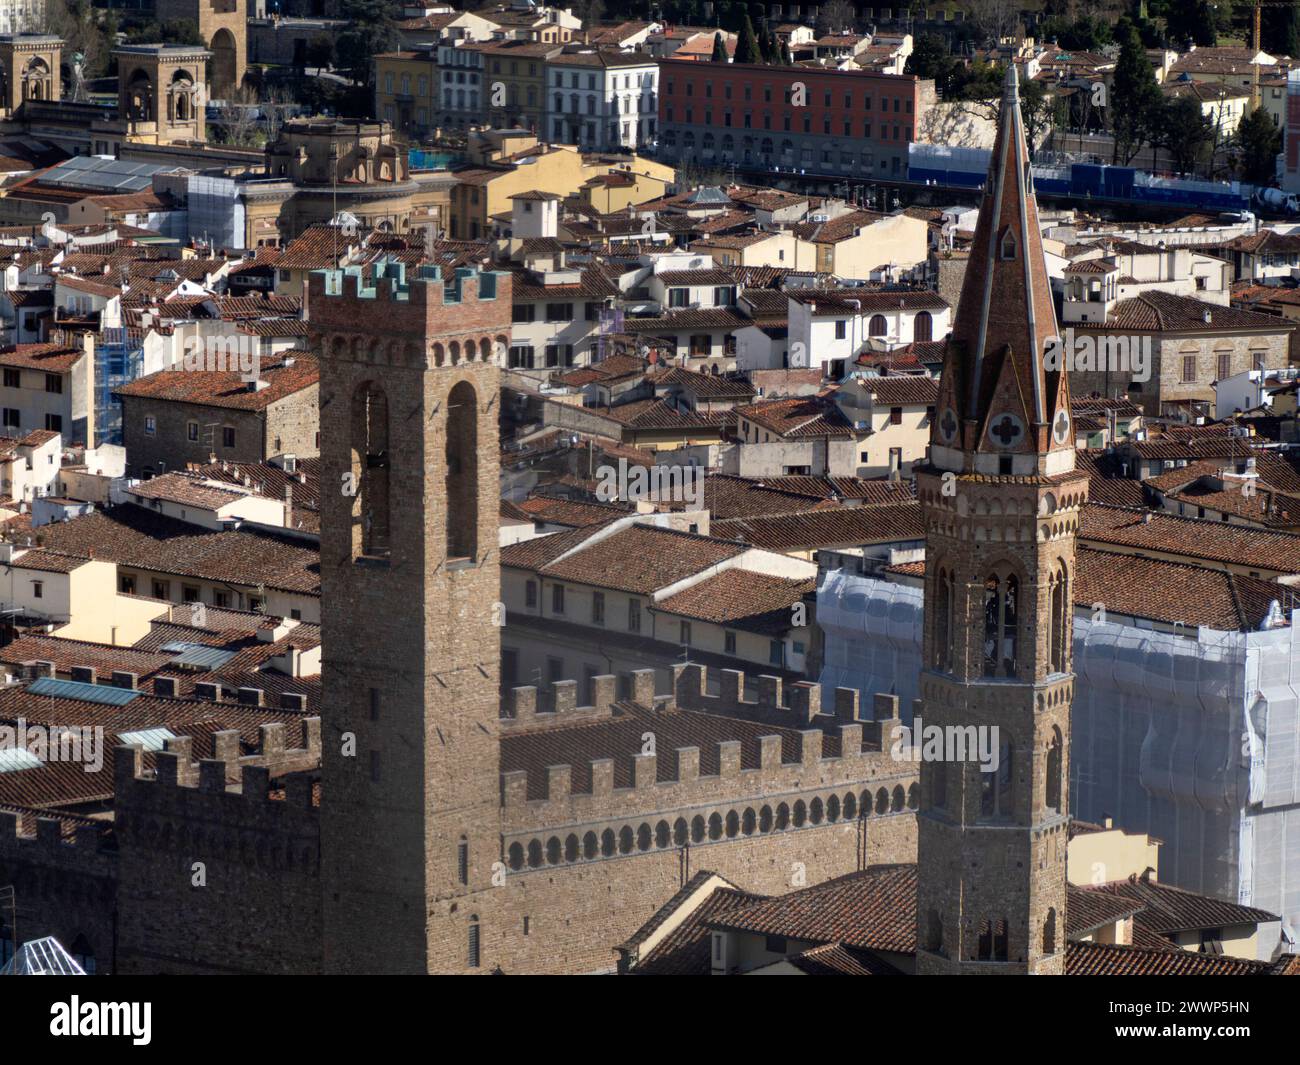 Palazzo del Bargello Firenze Vista aerea del paesaggio urbano dalla torre di giotto, dettaglio vicino alla Cattedrale di Santa Maria dei Fiori, alla Cupola del Brunelleschi, Italia Foto Stock